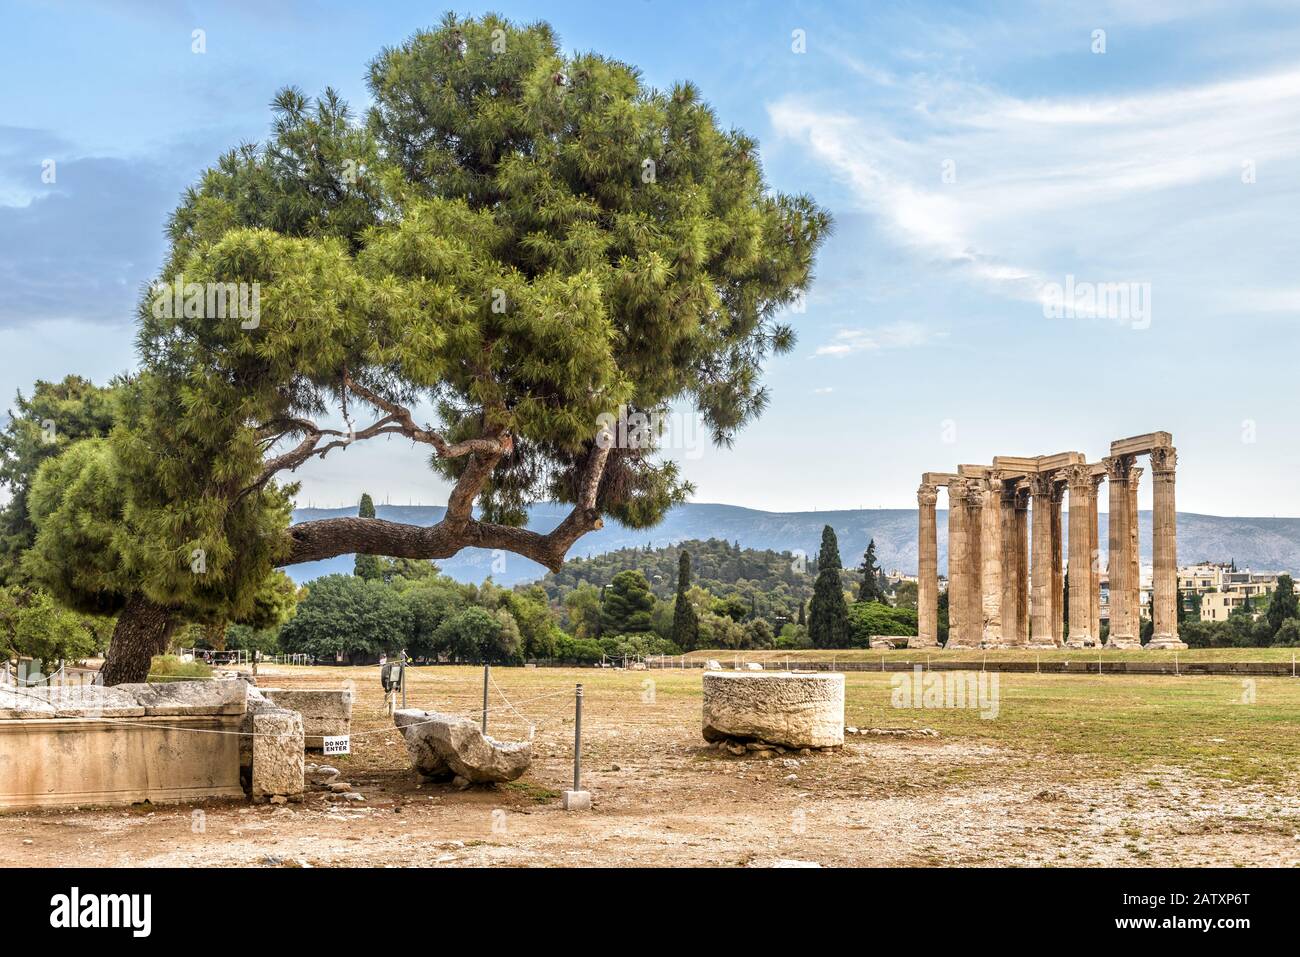 Tempel des olympischen Zeus, Athen, Griechenland. Es ist eines der wichtigsten Wahrzeichen Athens. Panorama der berühmten Antiken griechischen Ruinen im Zentrum von Athen. Landschaftlich Schön Stockfoto